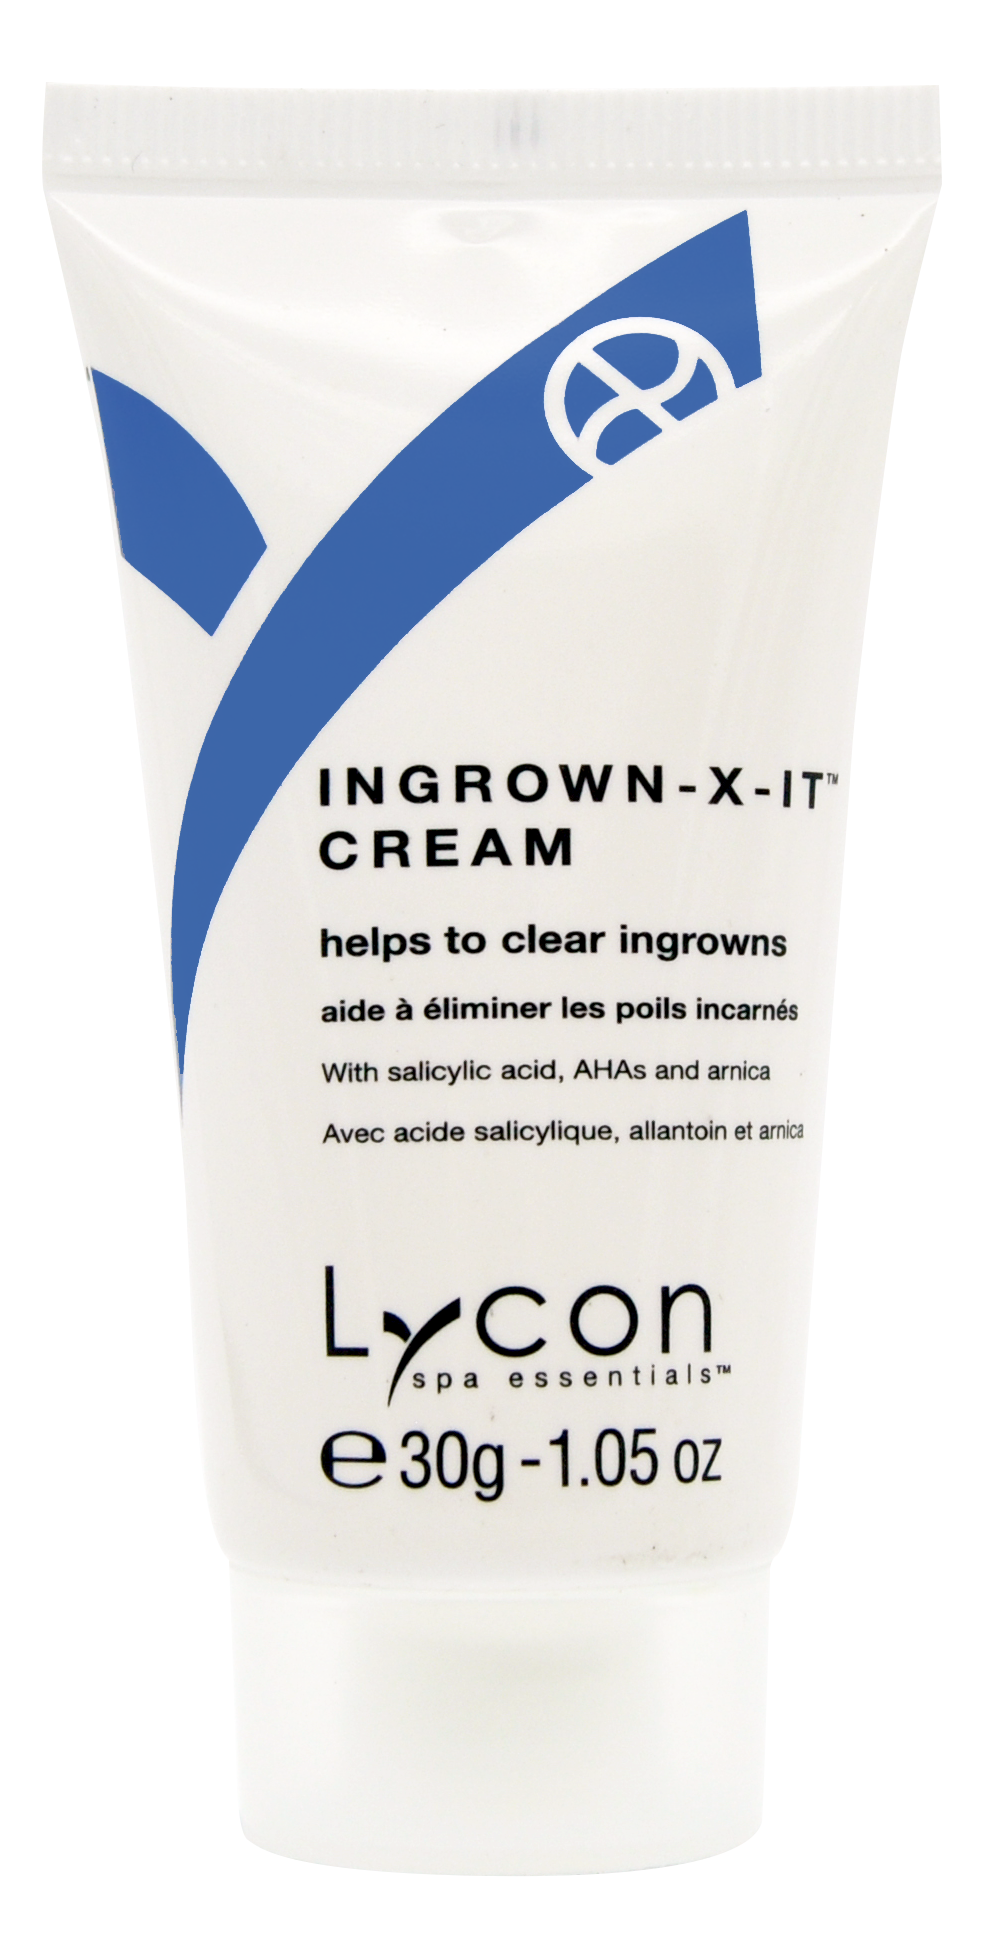 Ingrown X-IT Cream